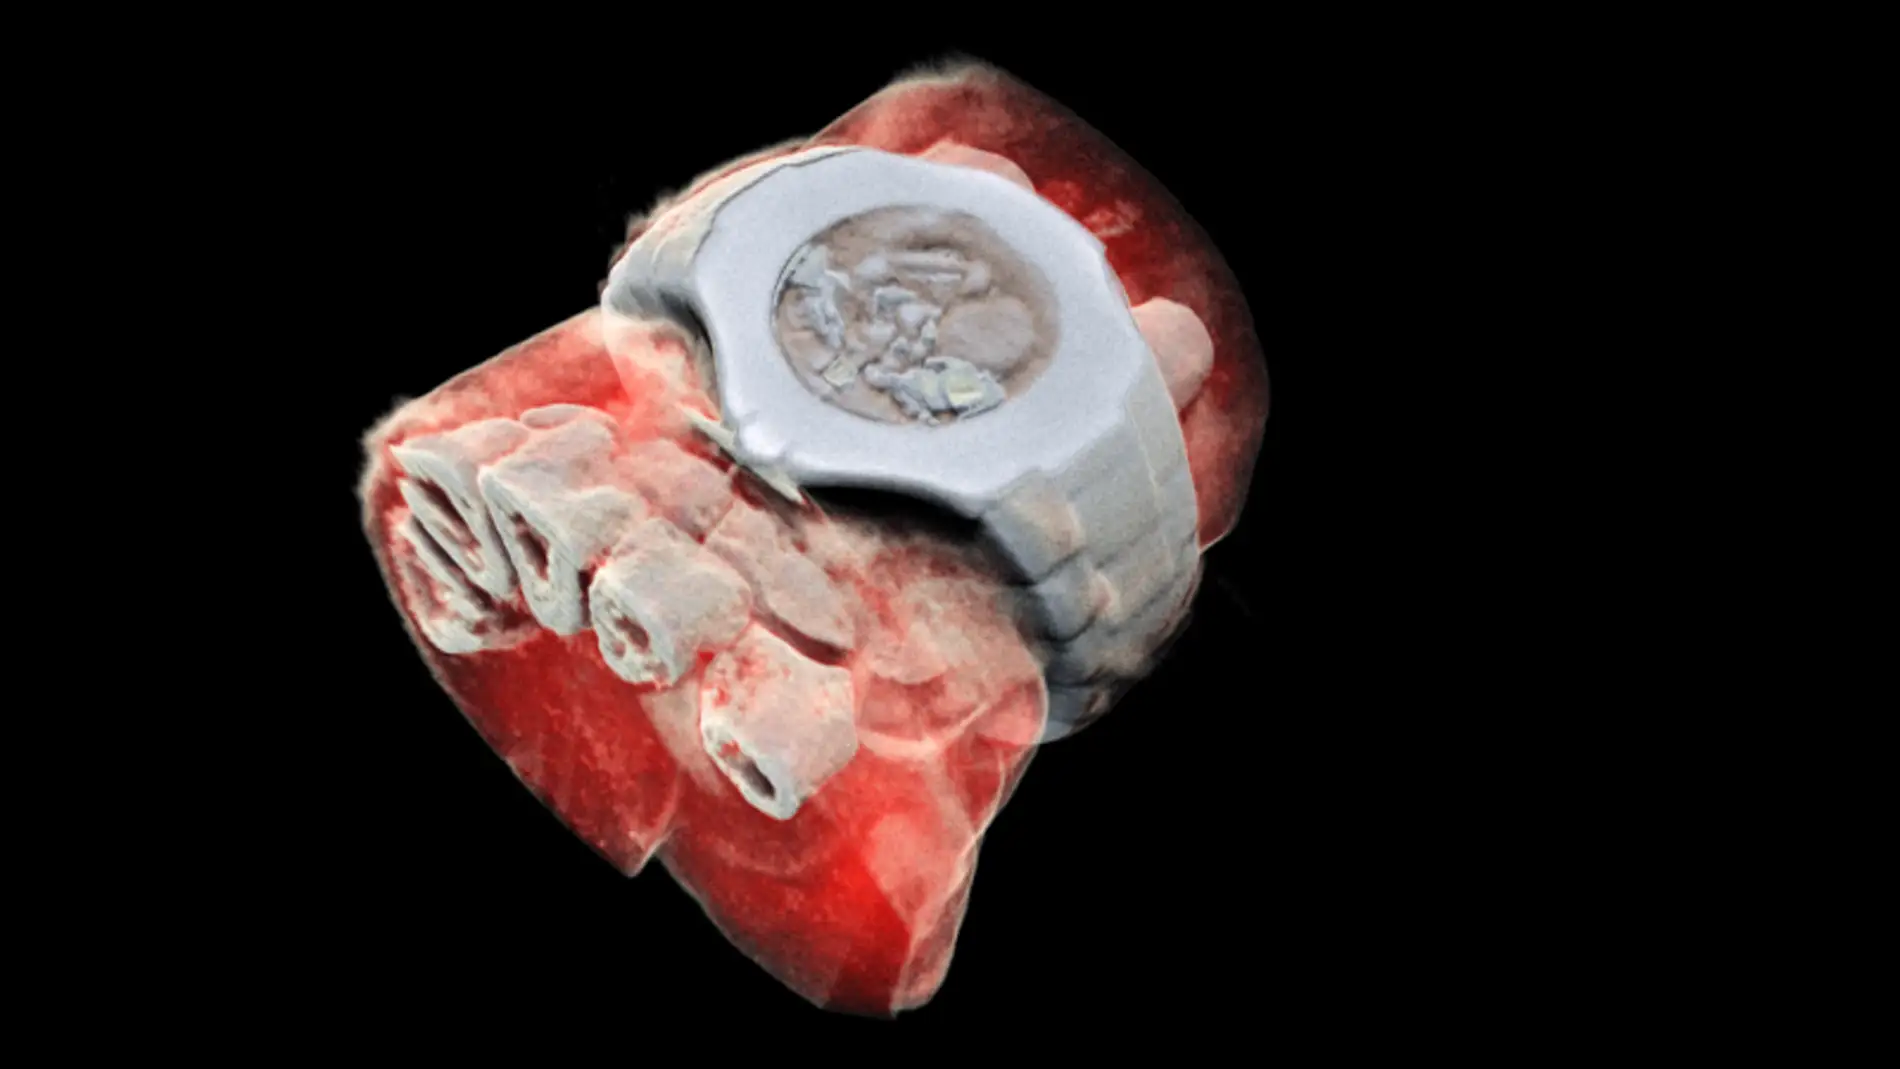 Radiografía a color de una muñeca en la que se aprecian los huesos, los tejidos blandos y hasta un reloj 